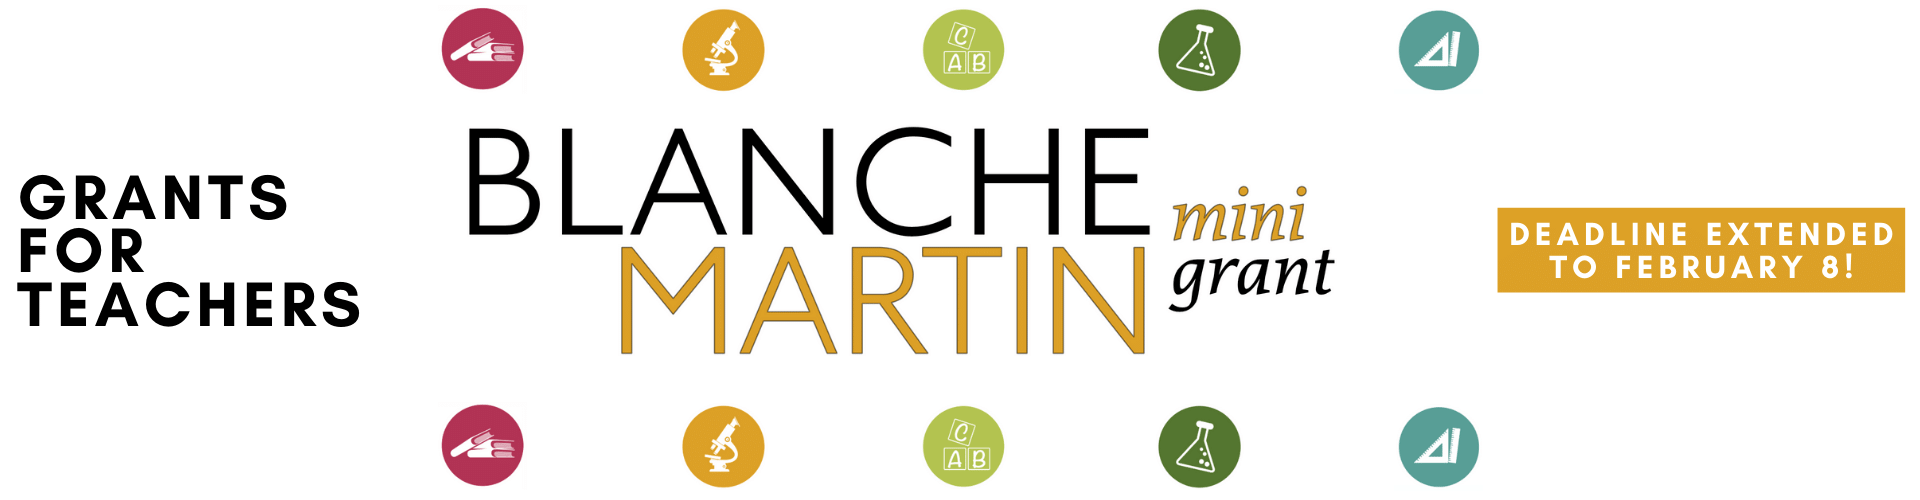 Blanche Martin Mini Grants, Grants for Teachers, Deadline extended to February 8